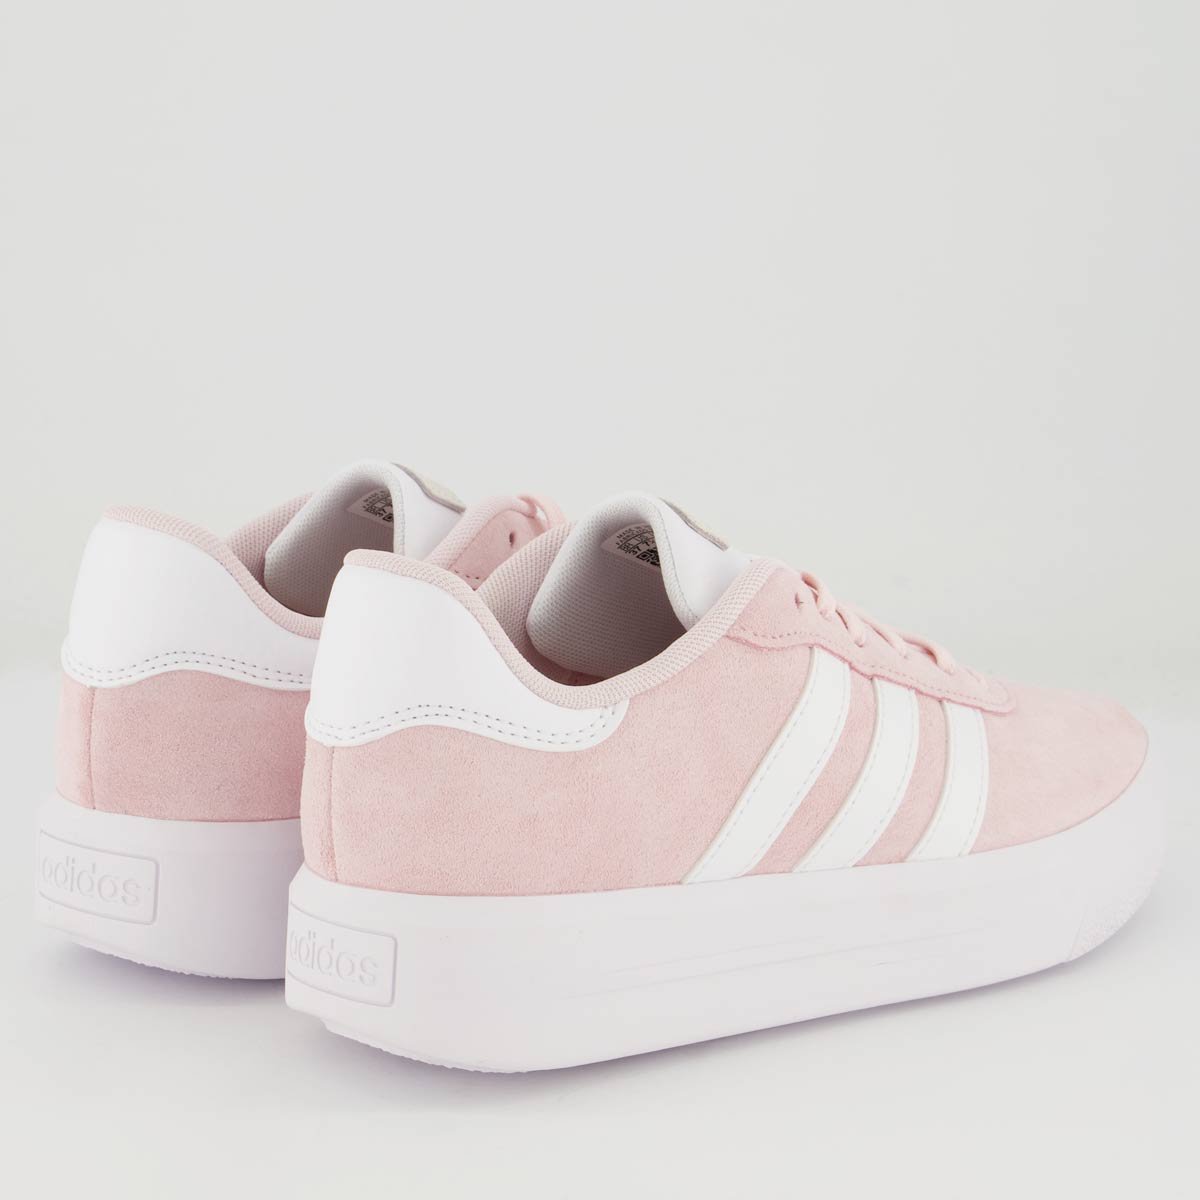 Tênis Adidas Court Platform Suede Feminino Rosa e Branco Branco 3